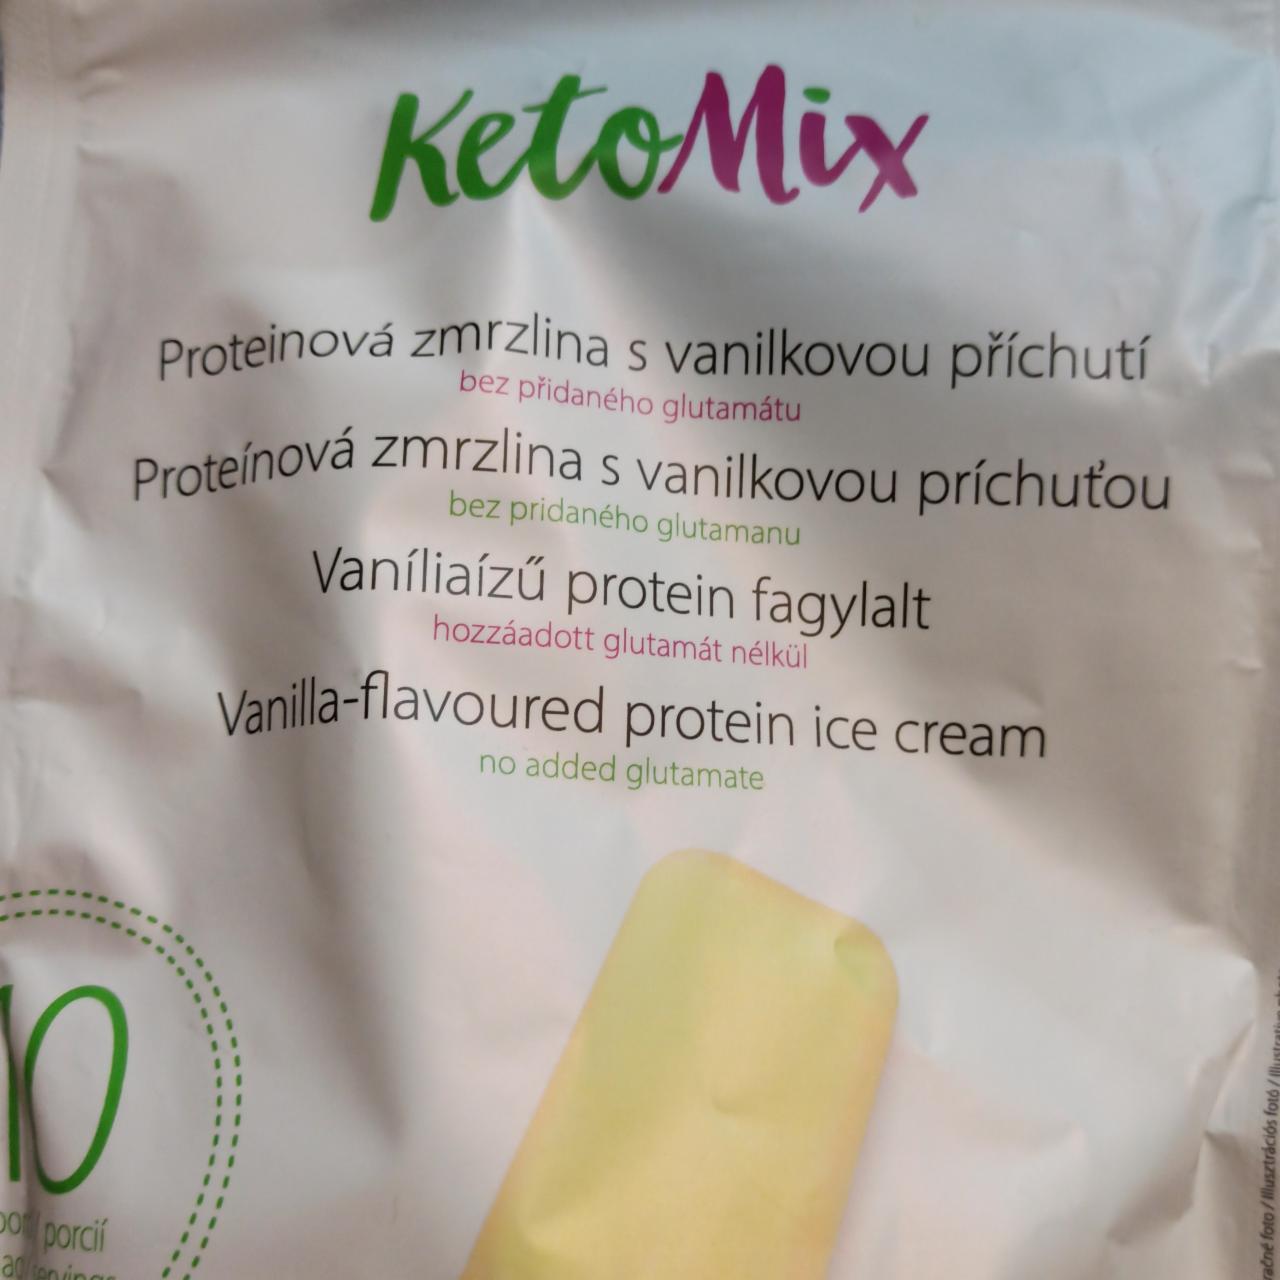 Fotografie - Proteinová zmrzlina s vanilkovou příchutí KetoMix